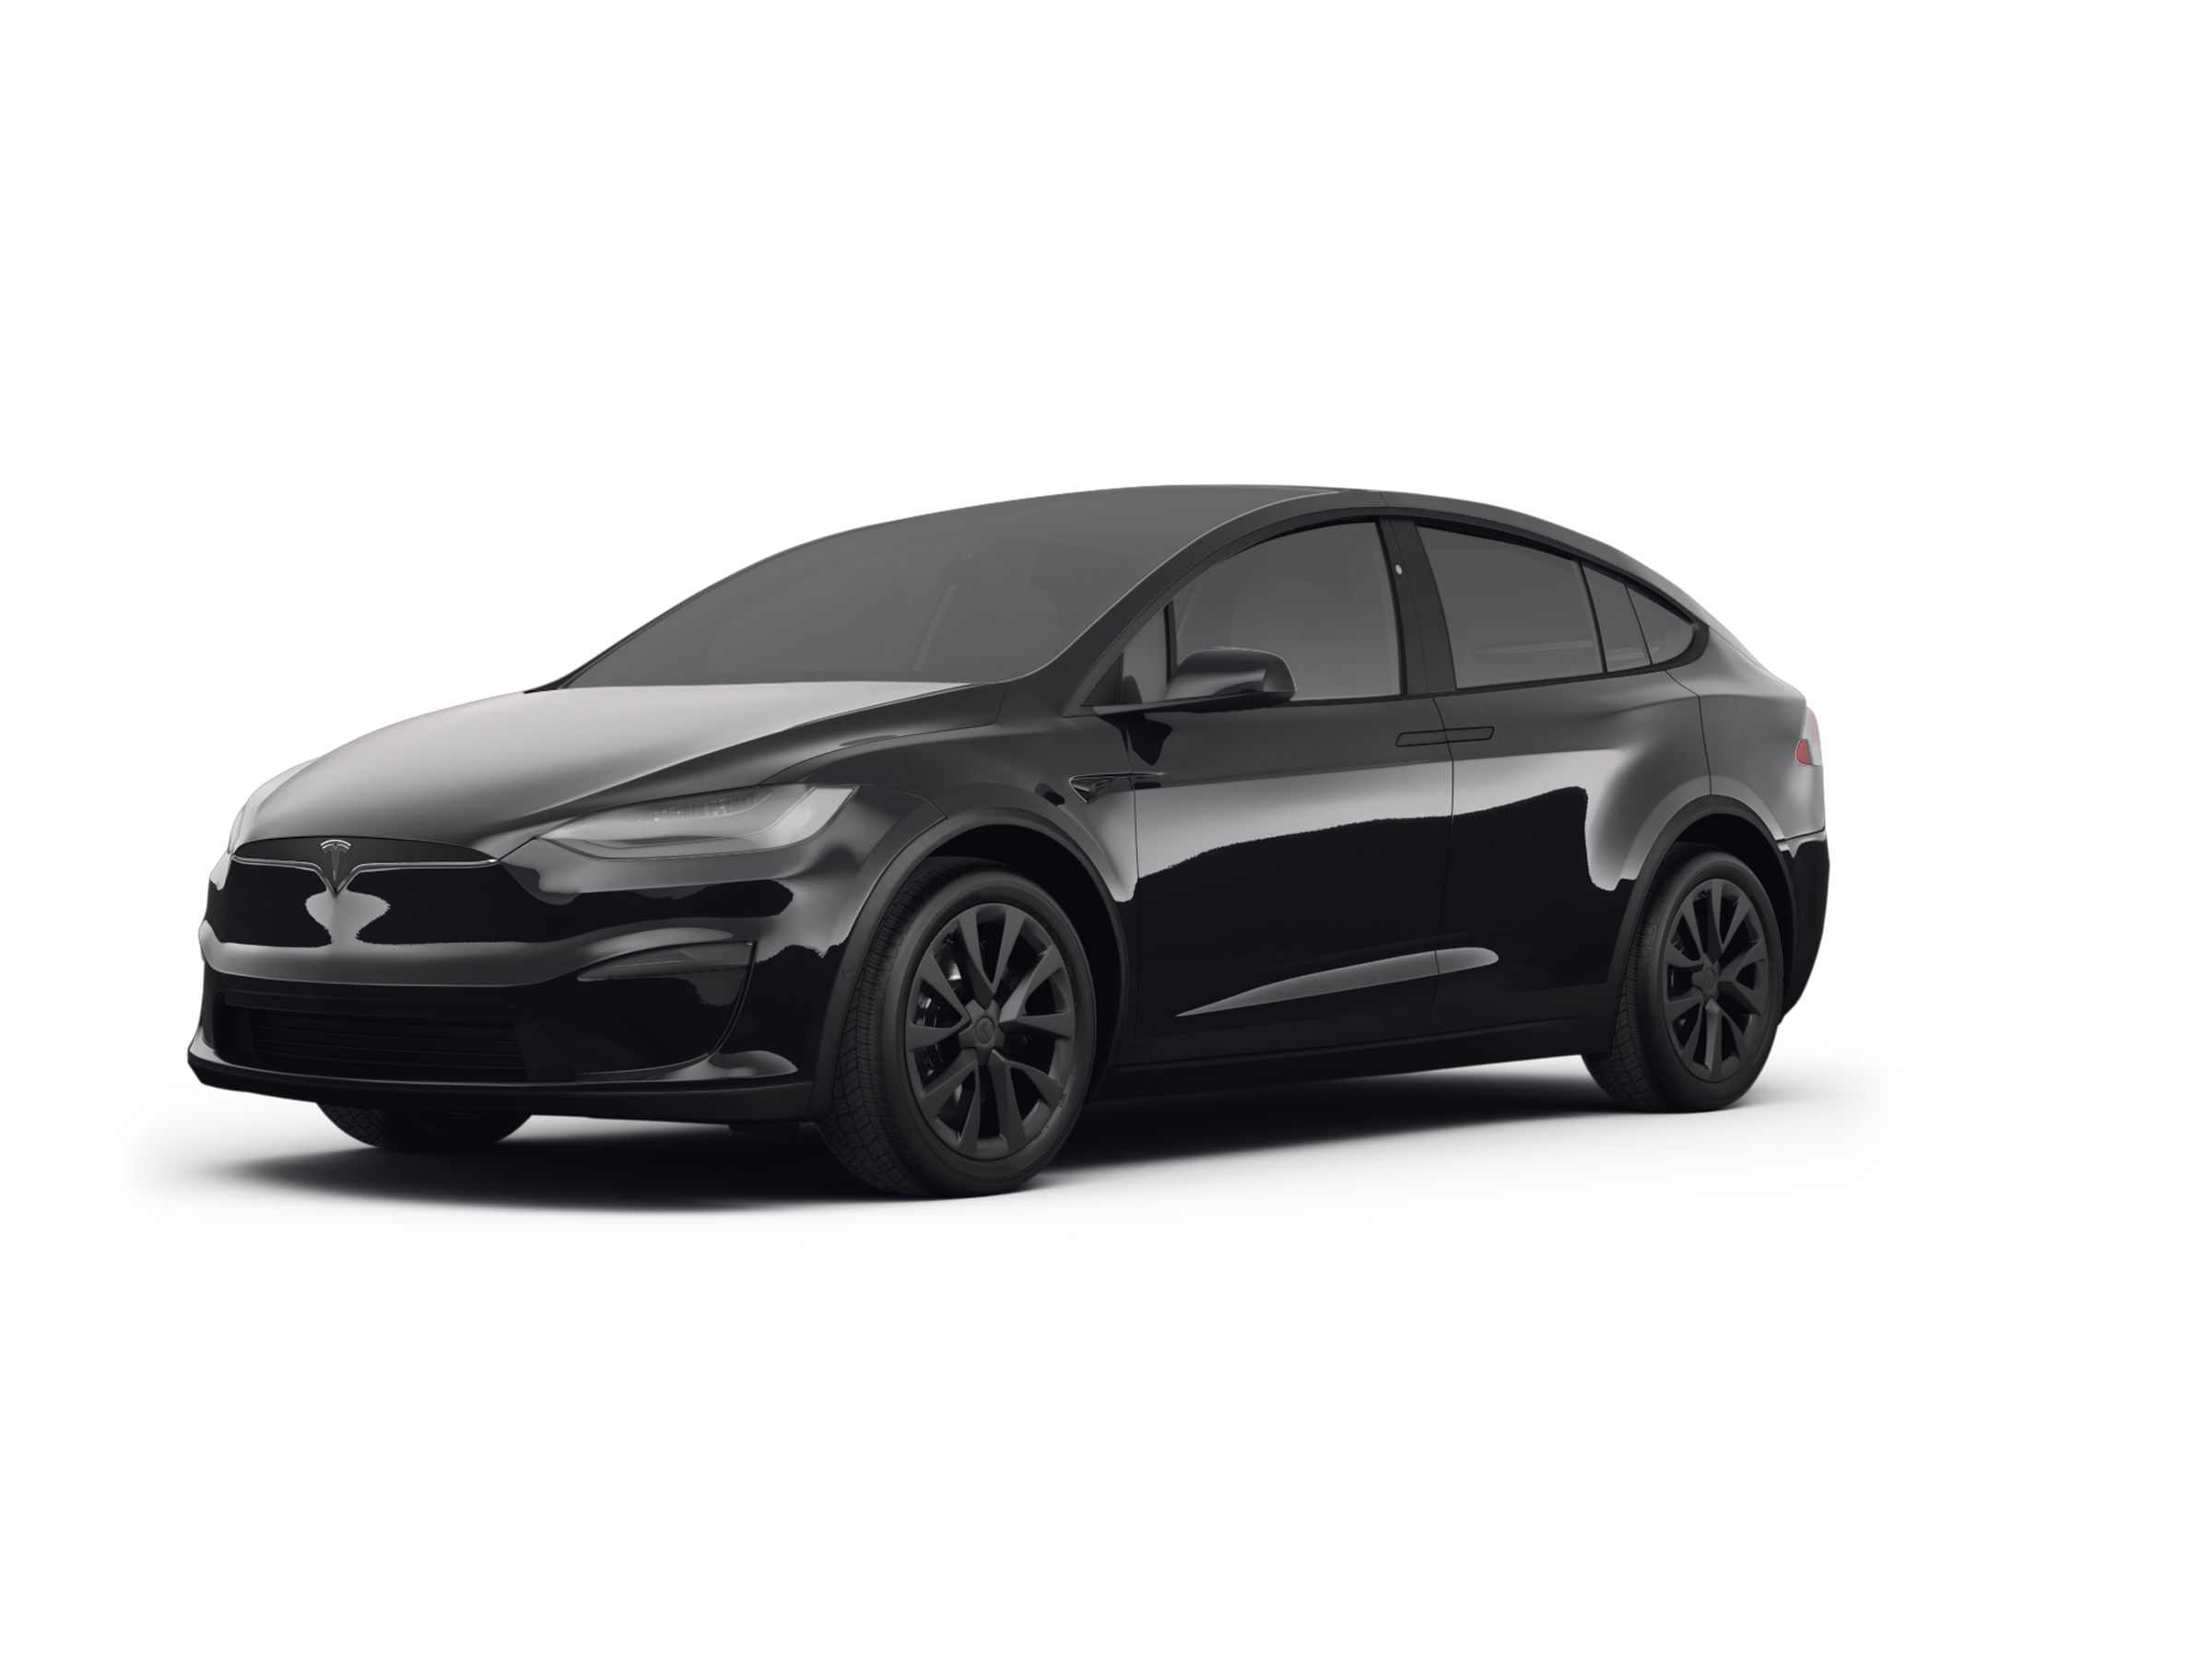 2020 Tesla Model 3 becomes the most efficient EV with 402 km range, ET Auto